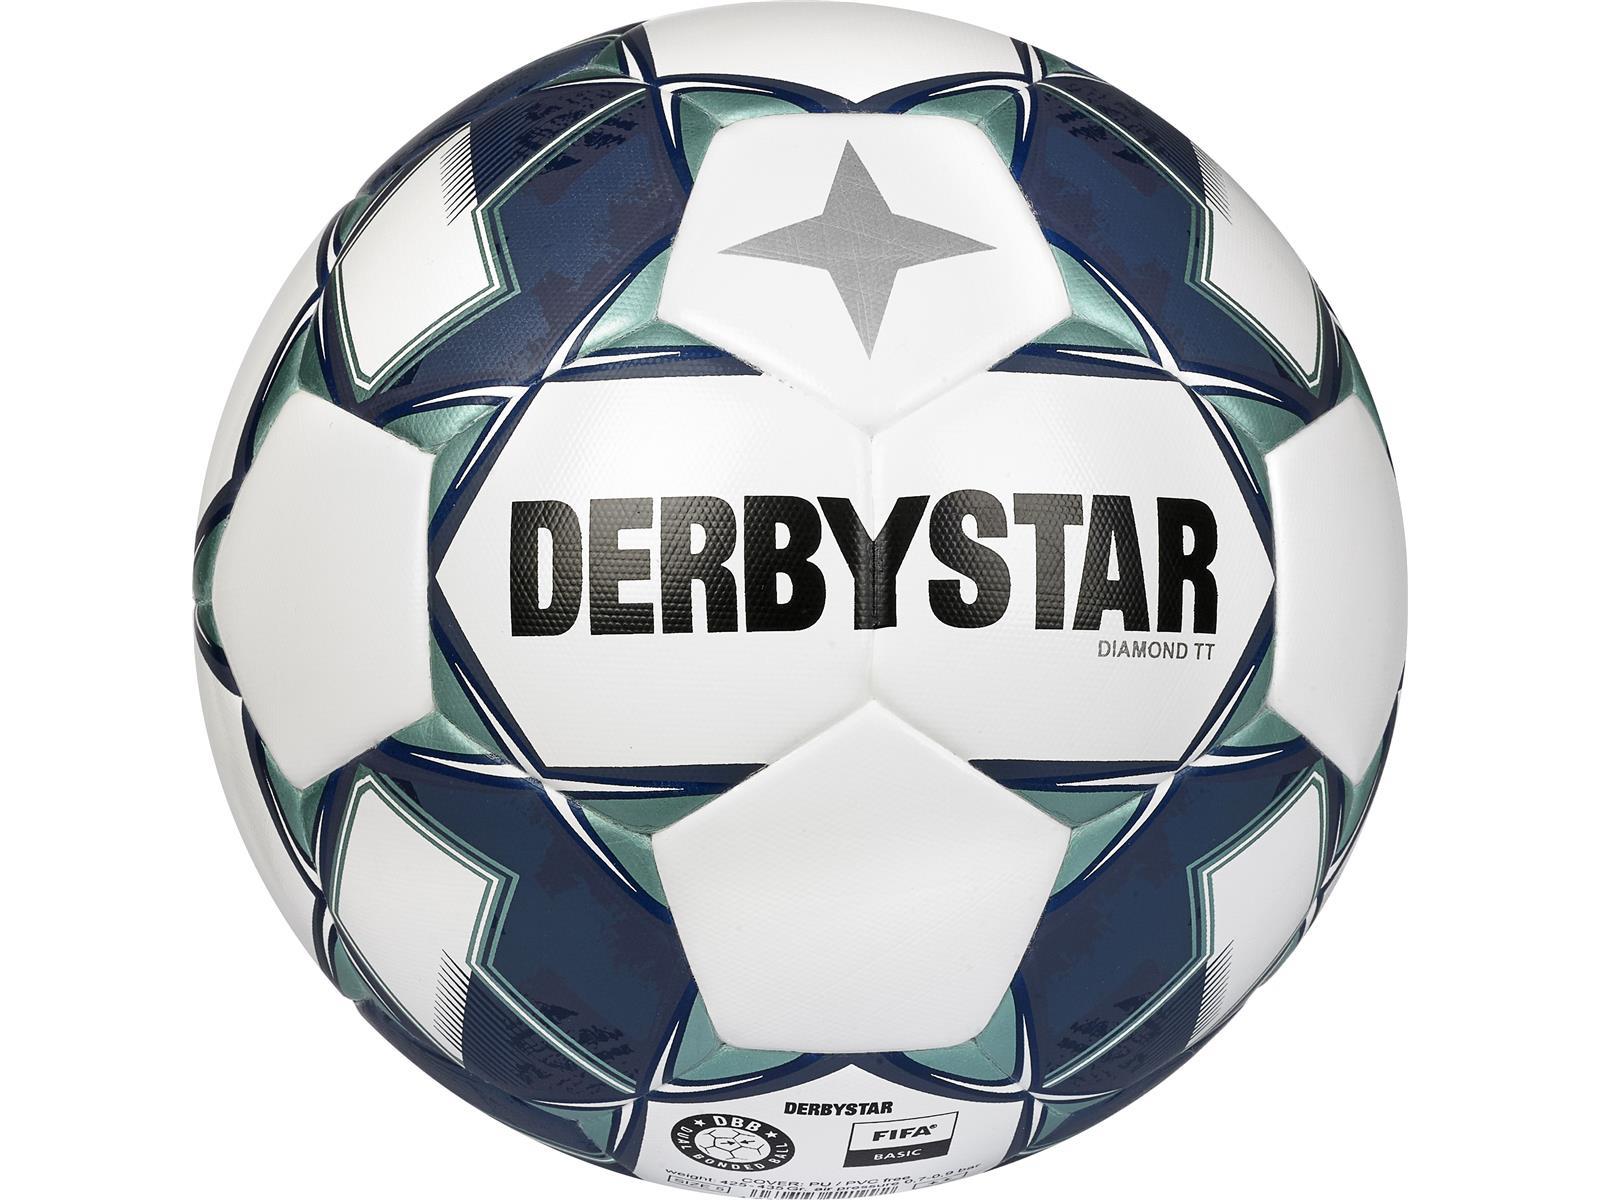 Derbystar Diamond TT Dual Bonded Trainingsball Gr.5